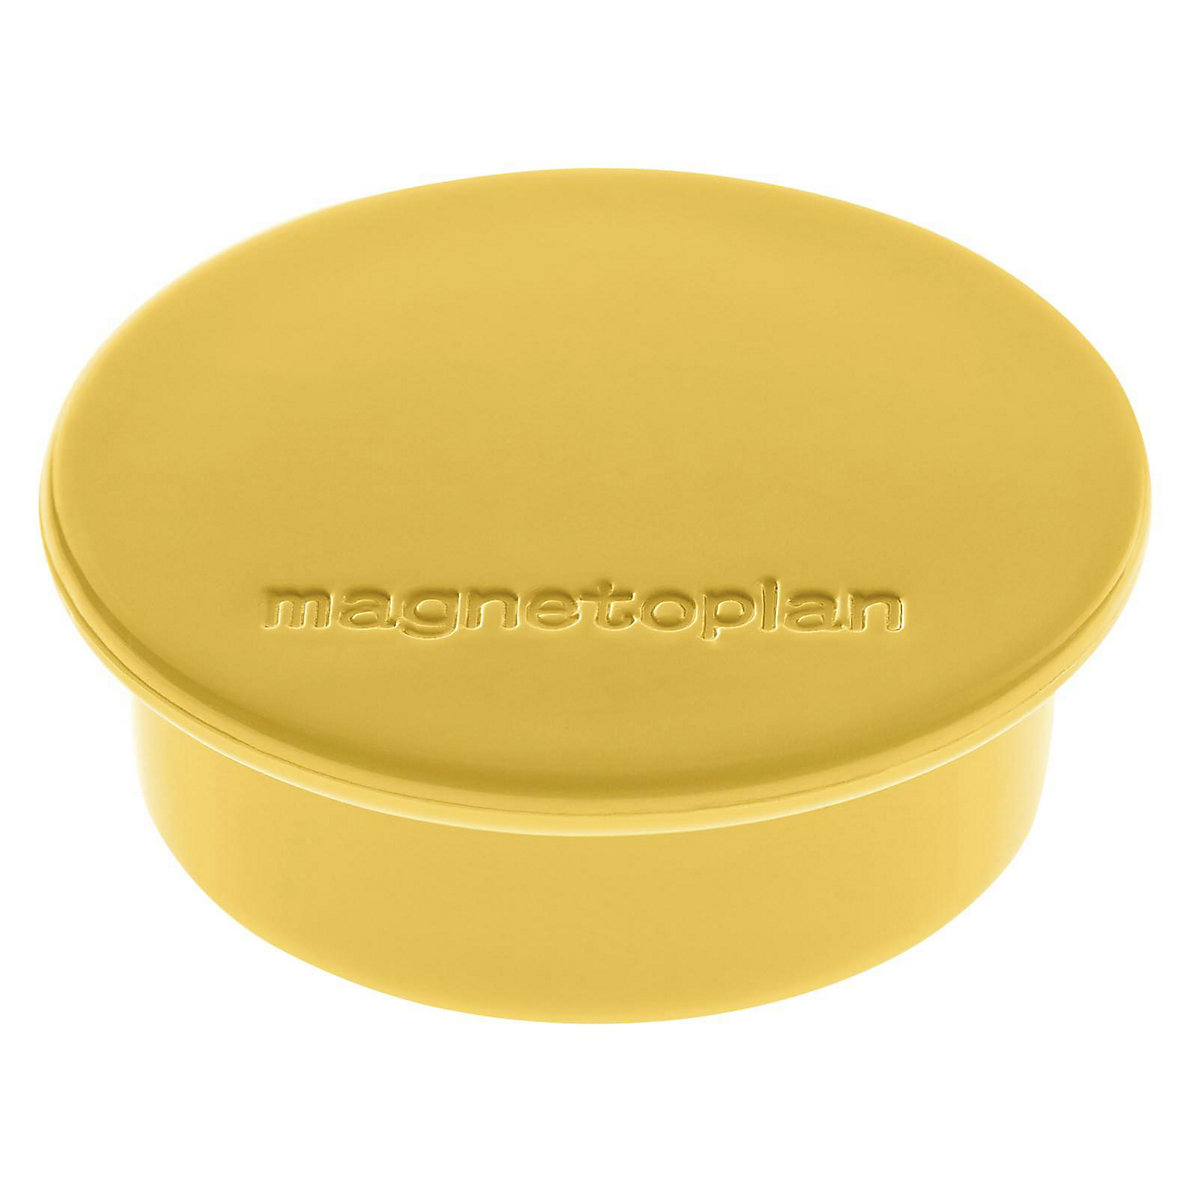 Magnet DISCOFIX COLOR magnetoplan, Ø 40 mm, VE 40 Stk, gelb-9